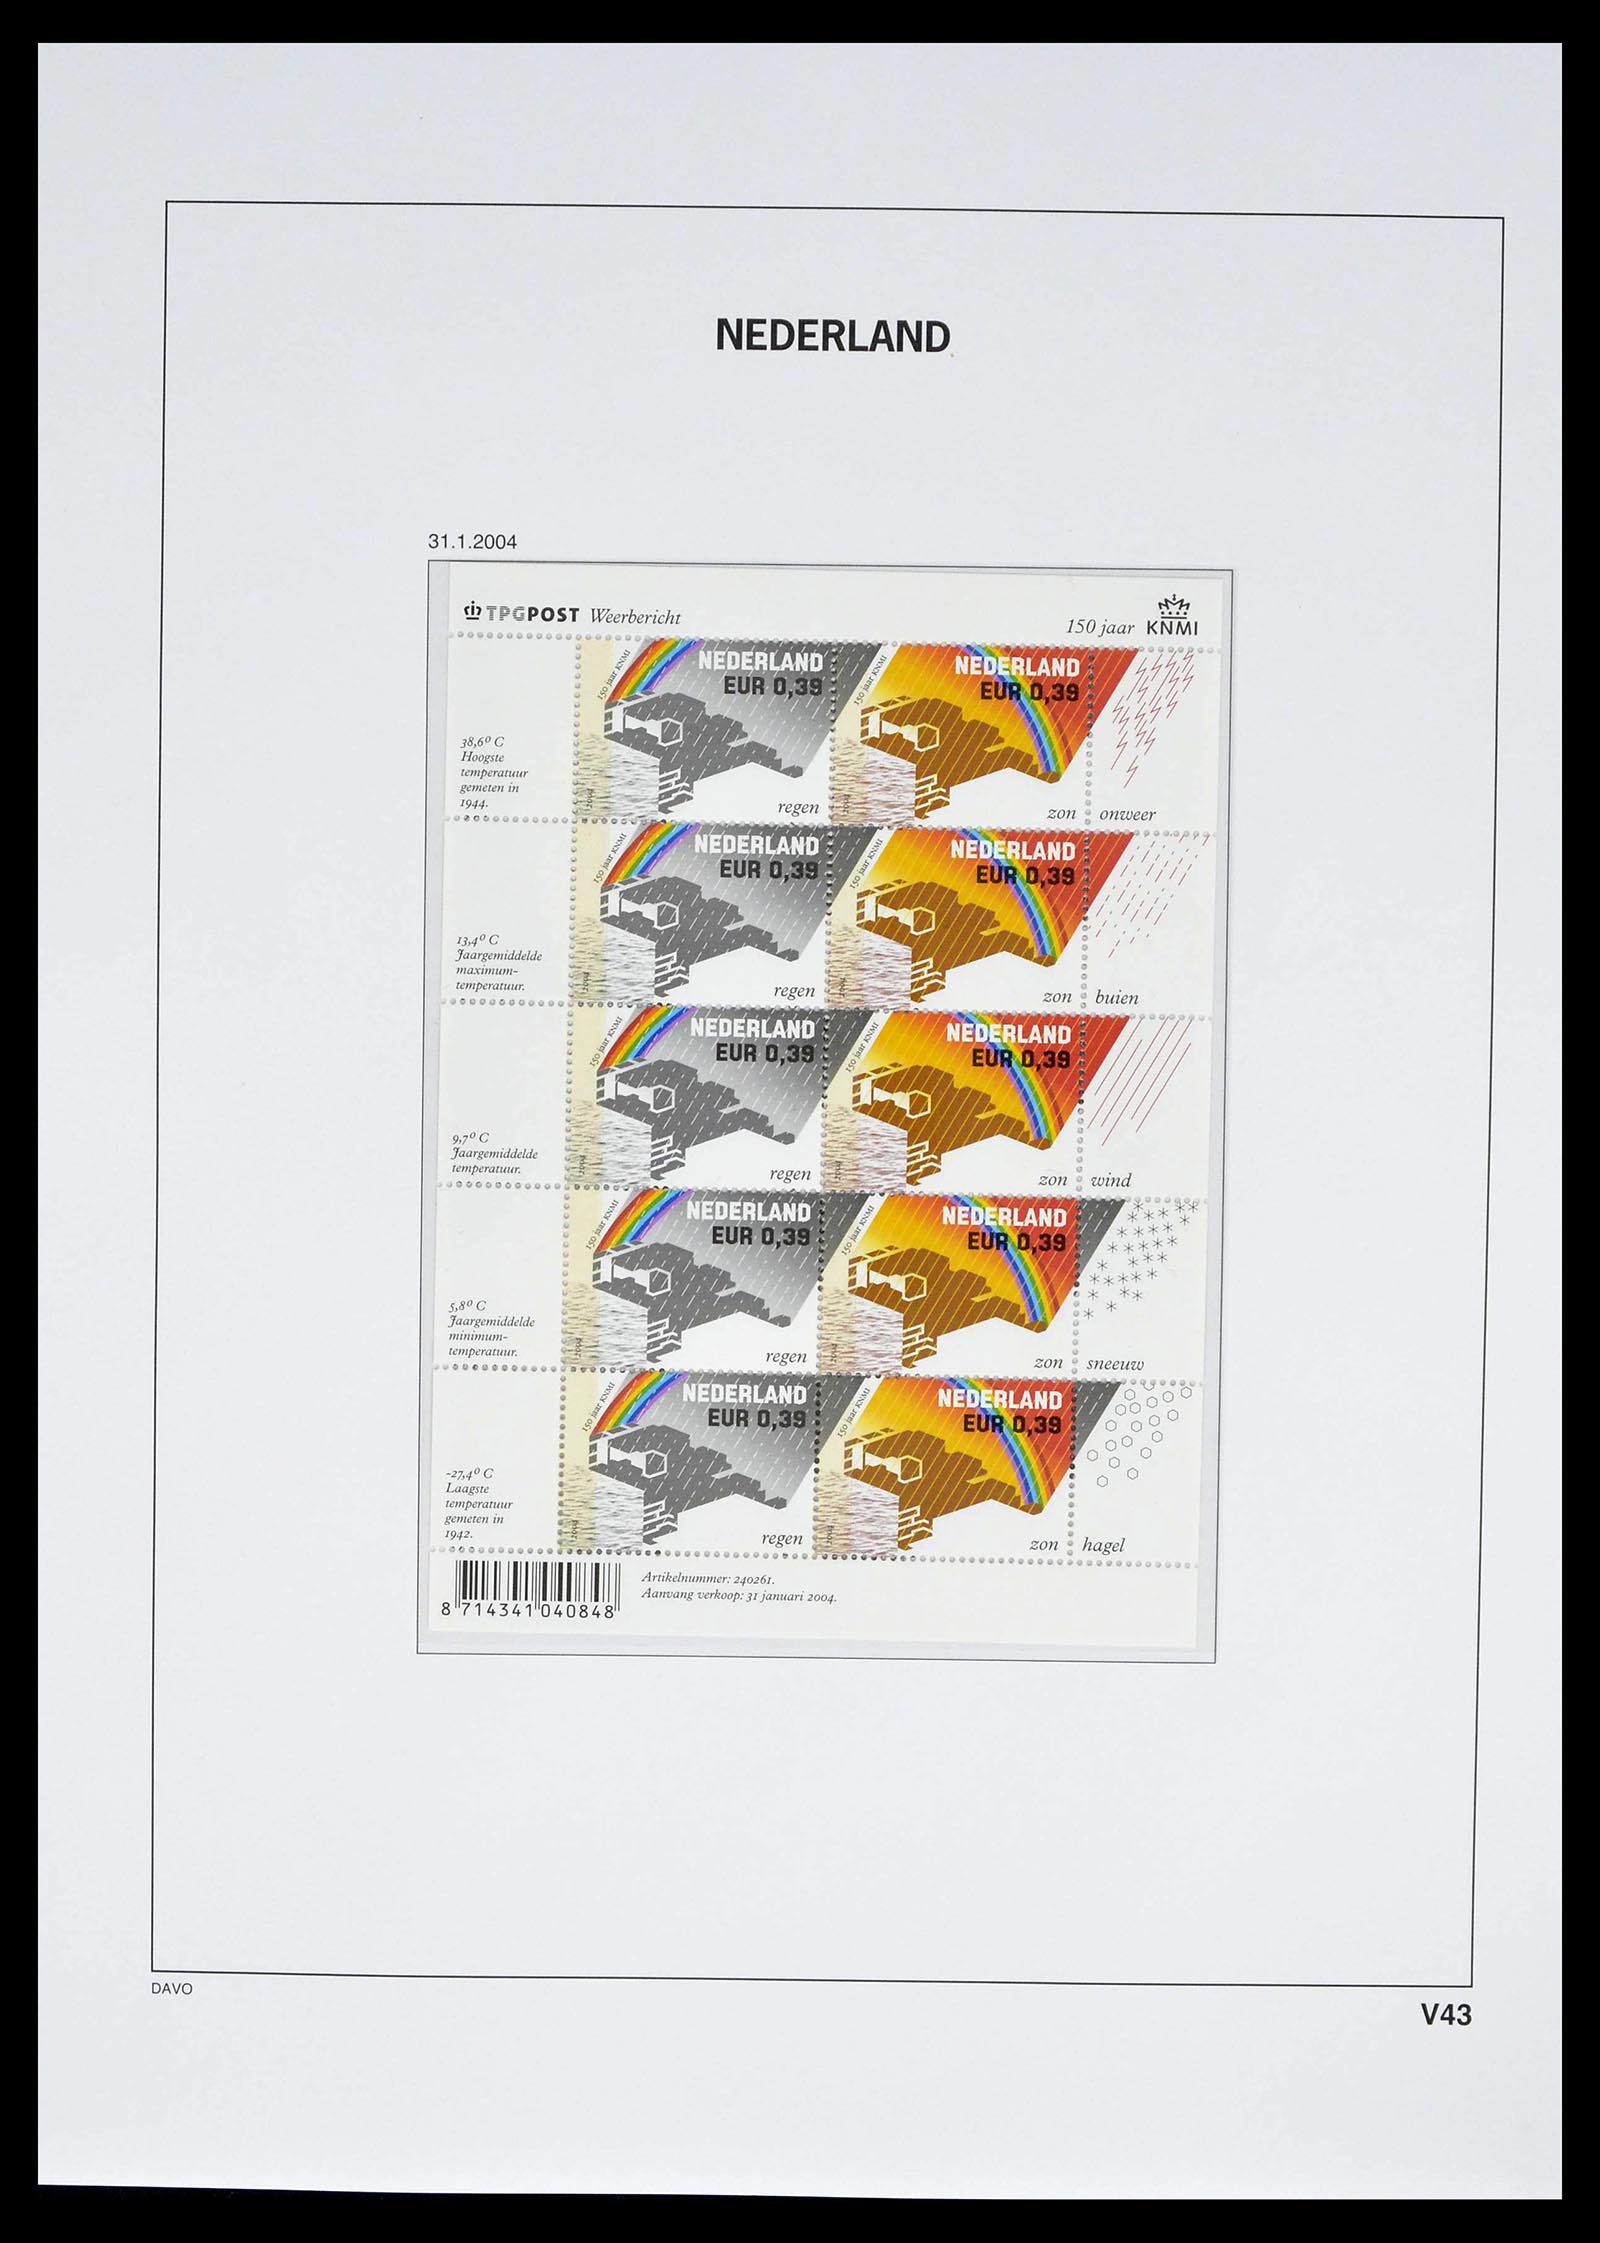 39134 0057 - Stamp collection 39134 Netherlands sheetlets 1992-2019!